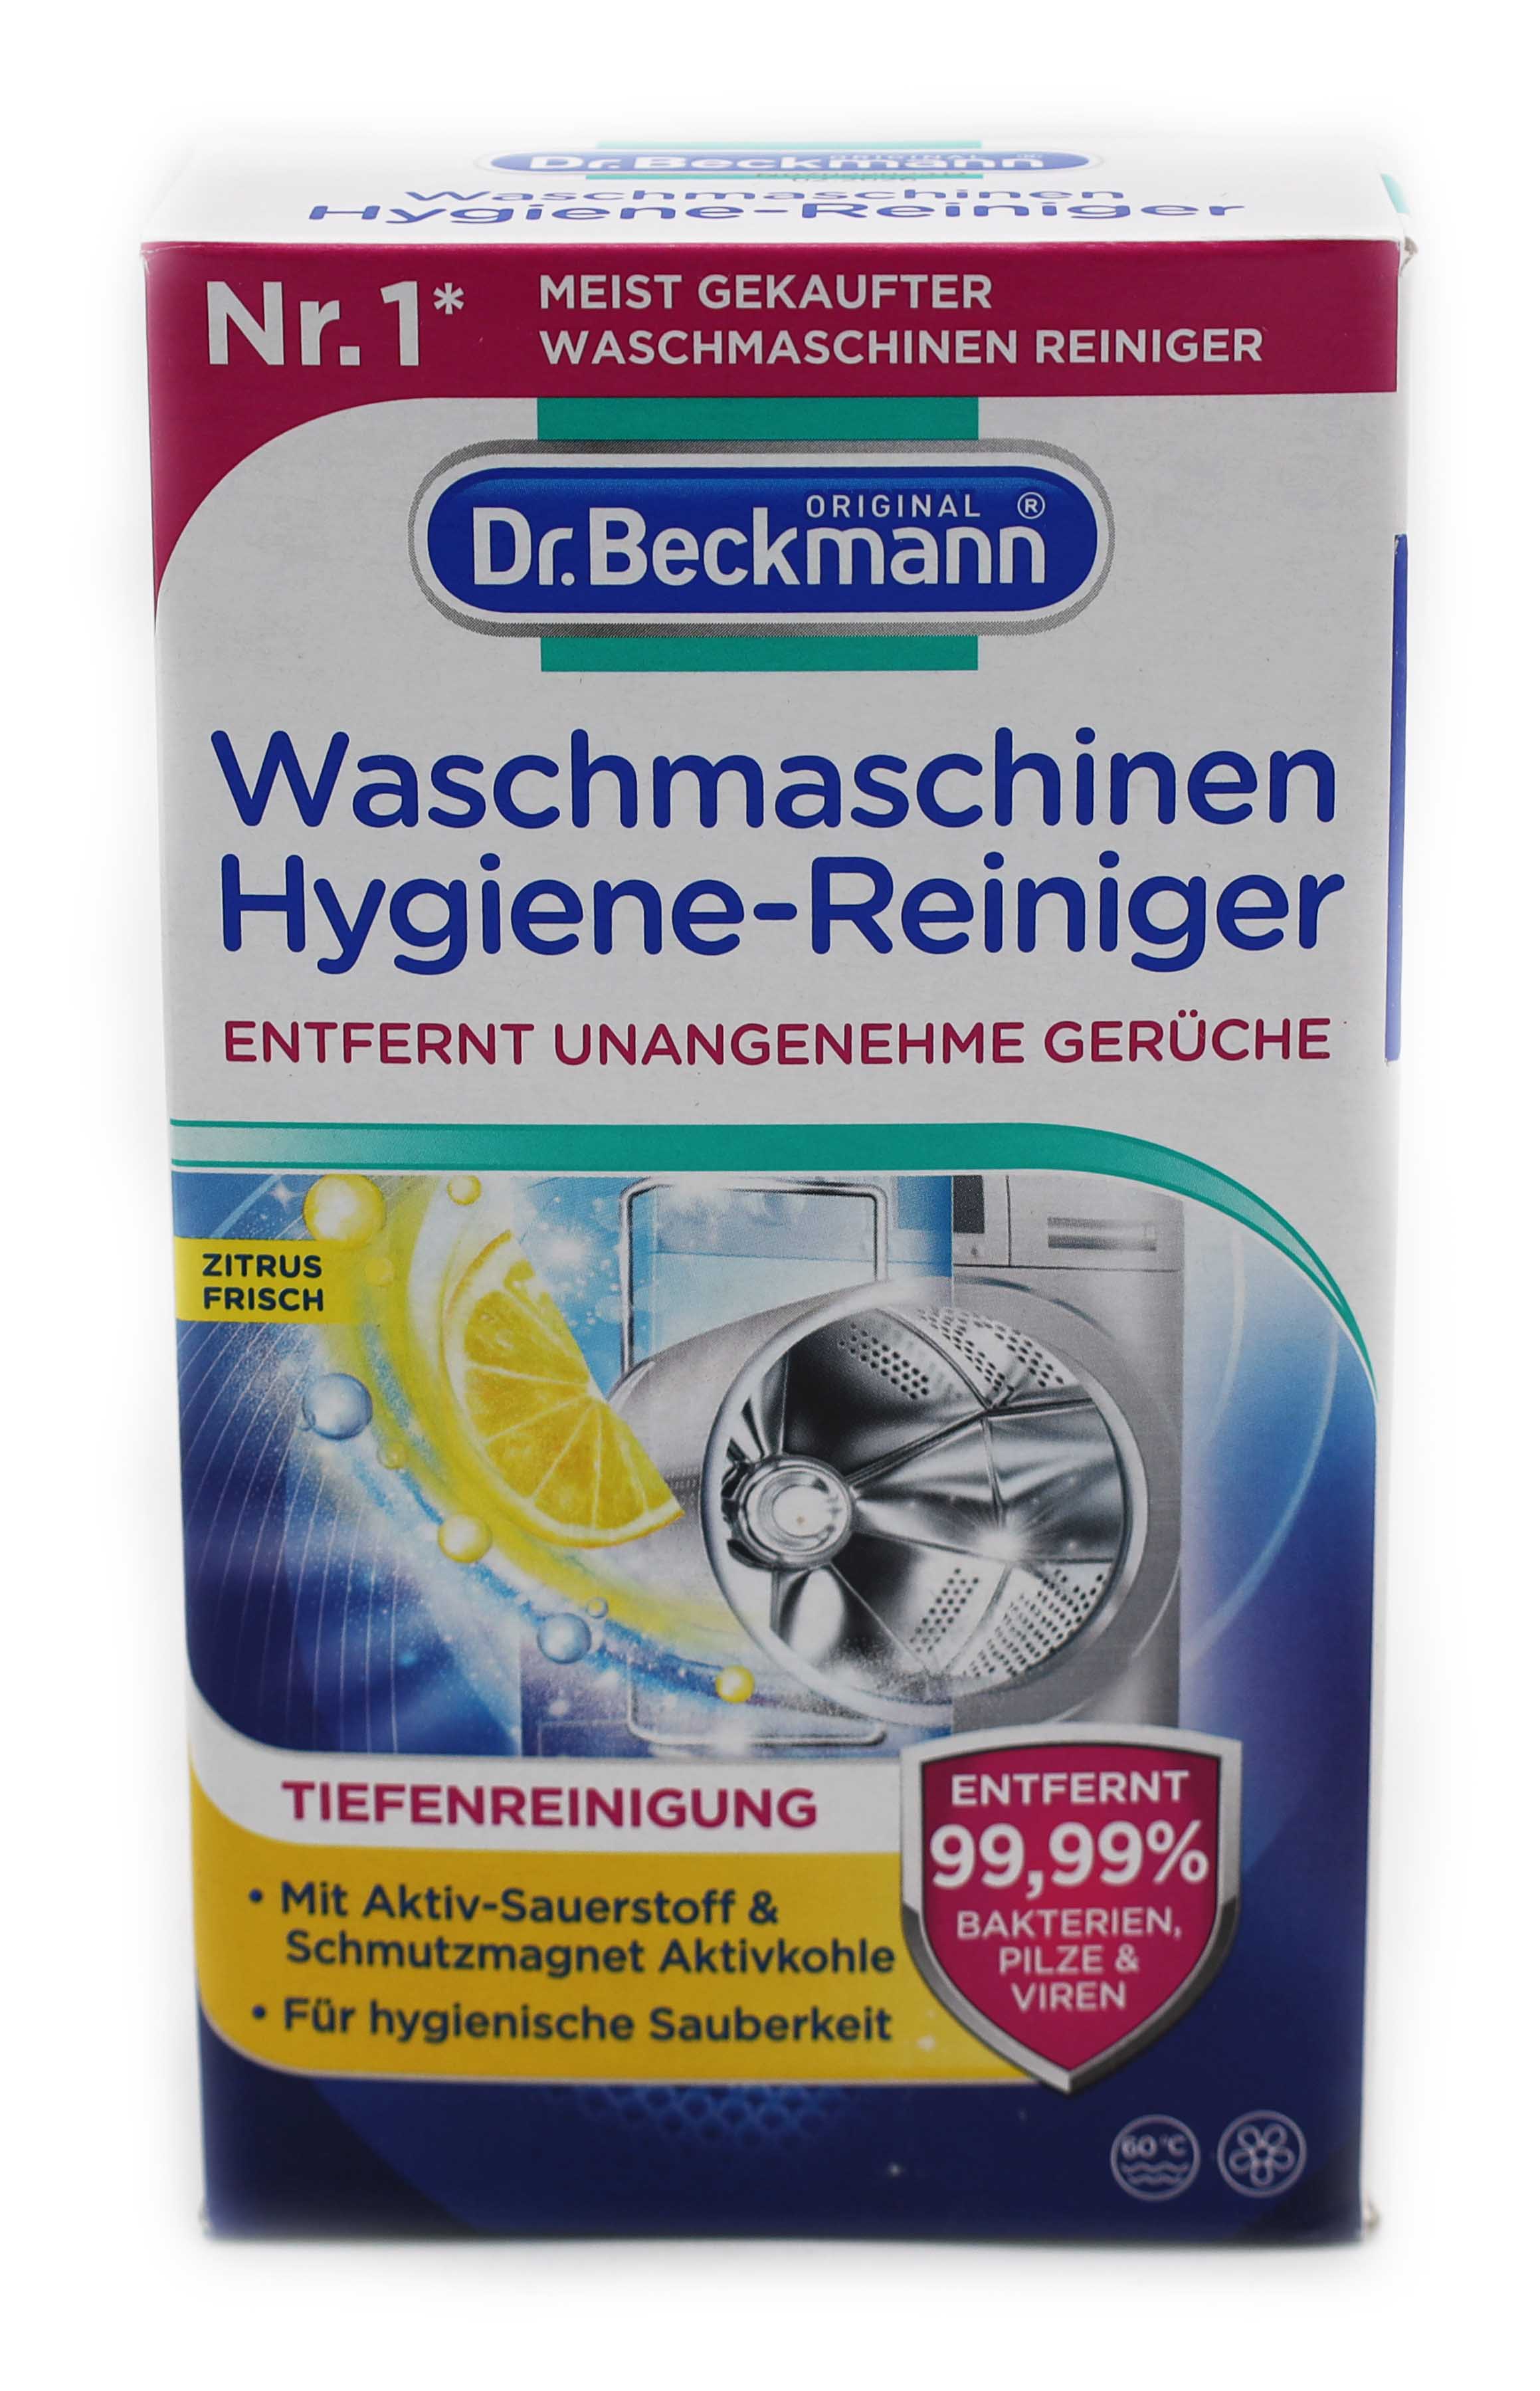 Dr.Beckmann Waschmaschinen Hygiene Reiniger 250g